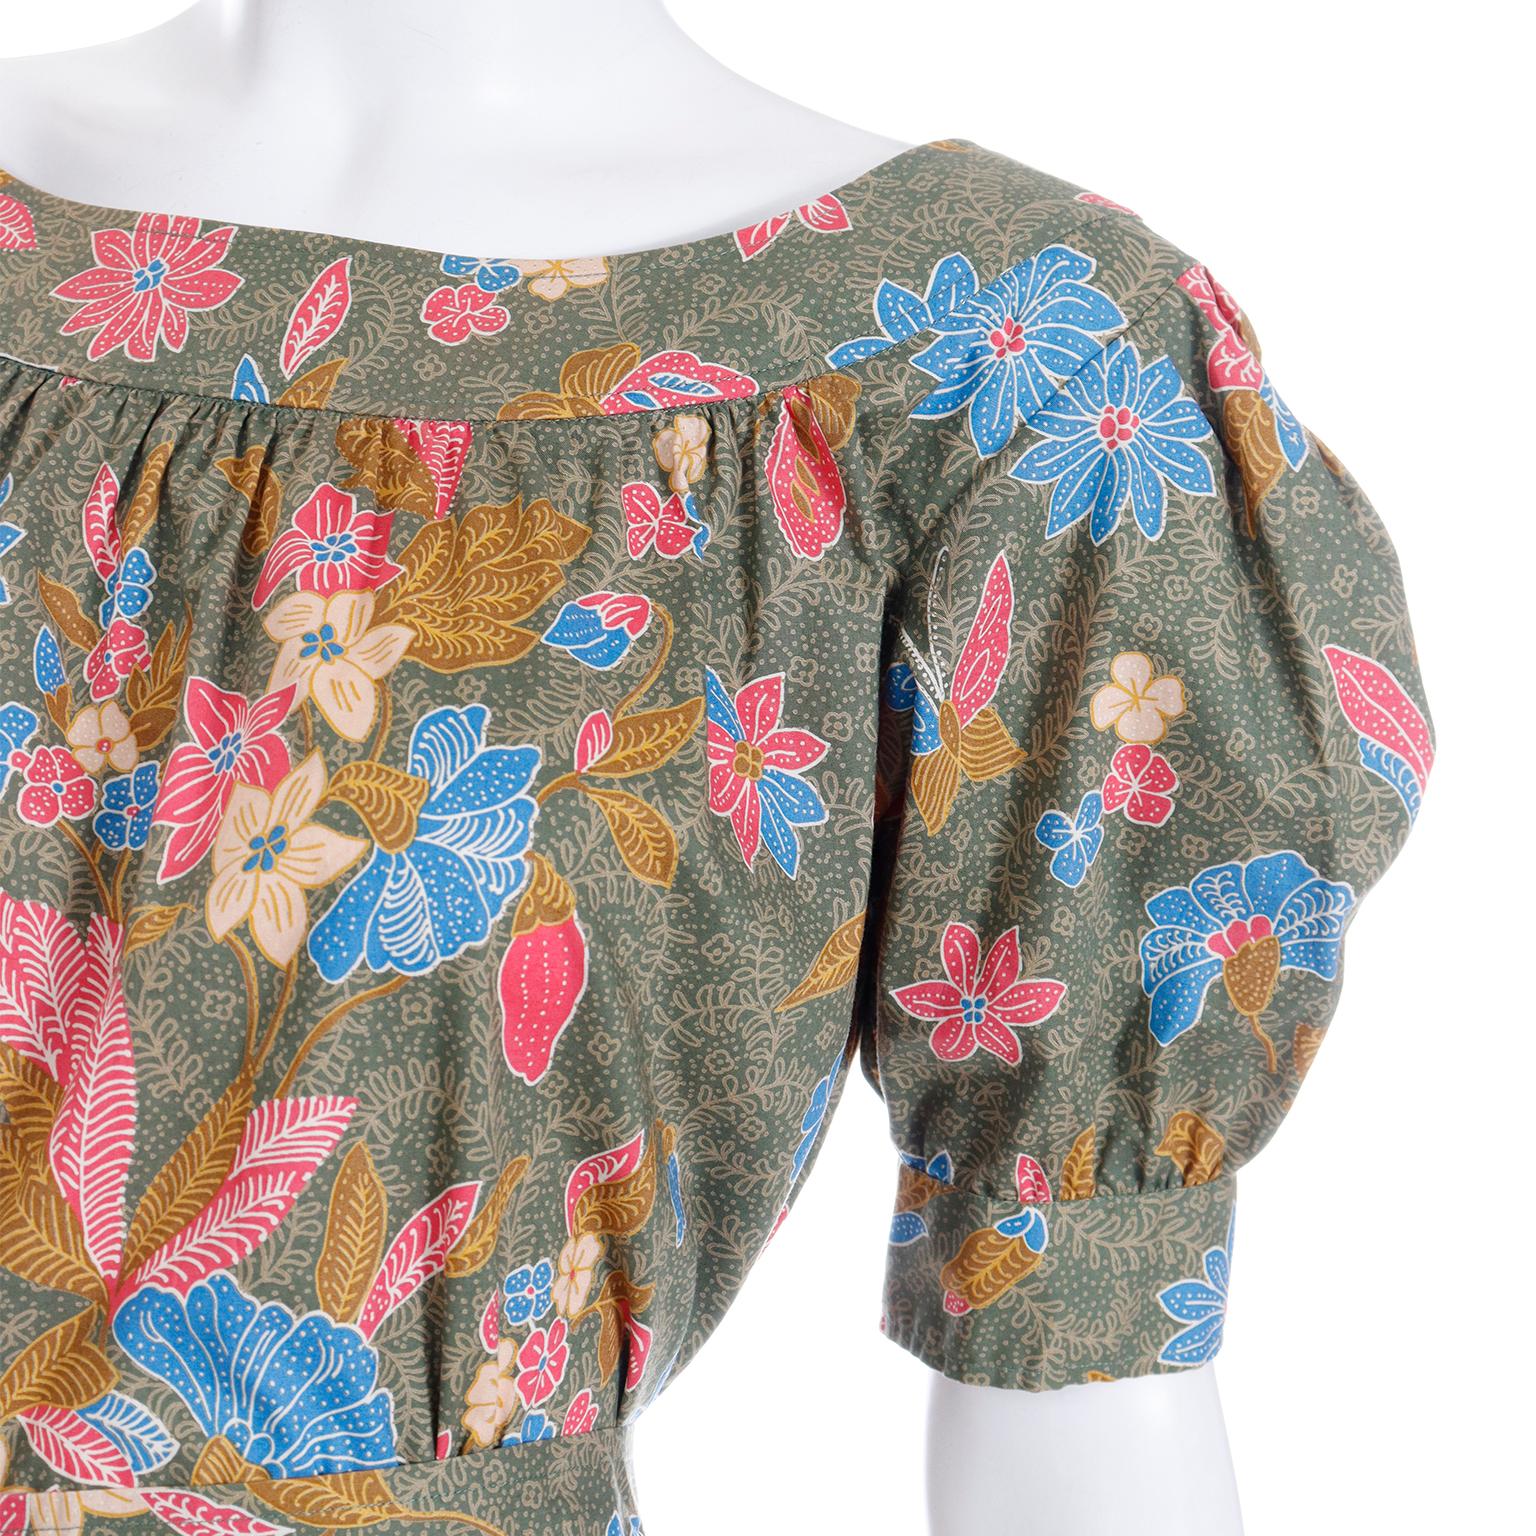 S/S 1986 Yves Saint Laurent Vintage YSL Botanical Blouse & Skirt 2 Pc Dress For Sale 3